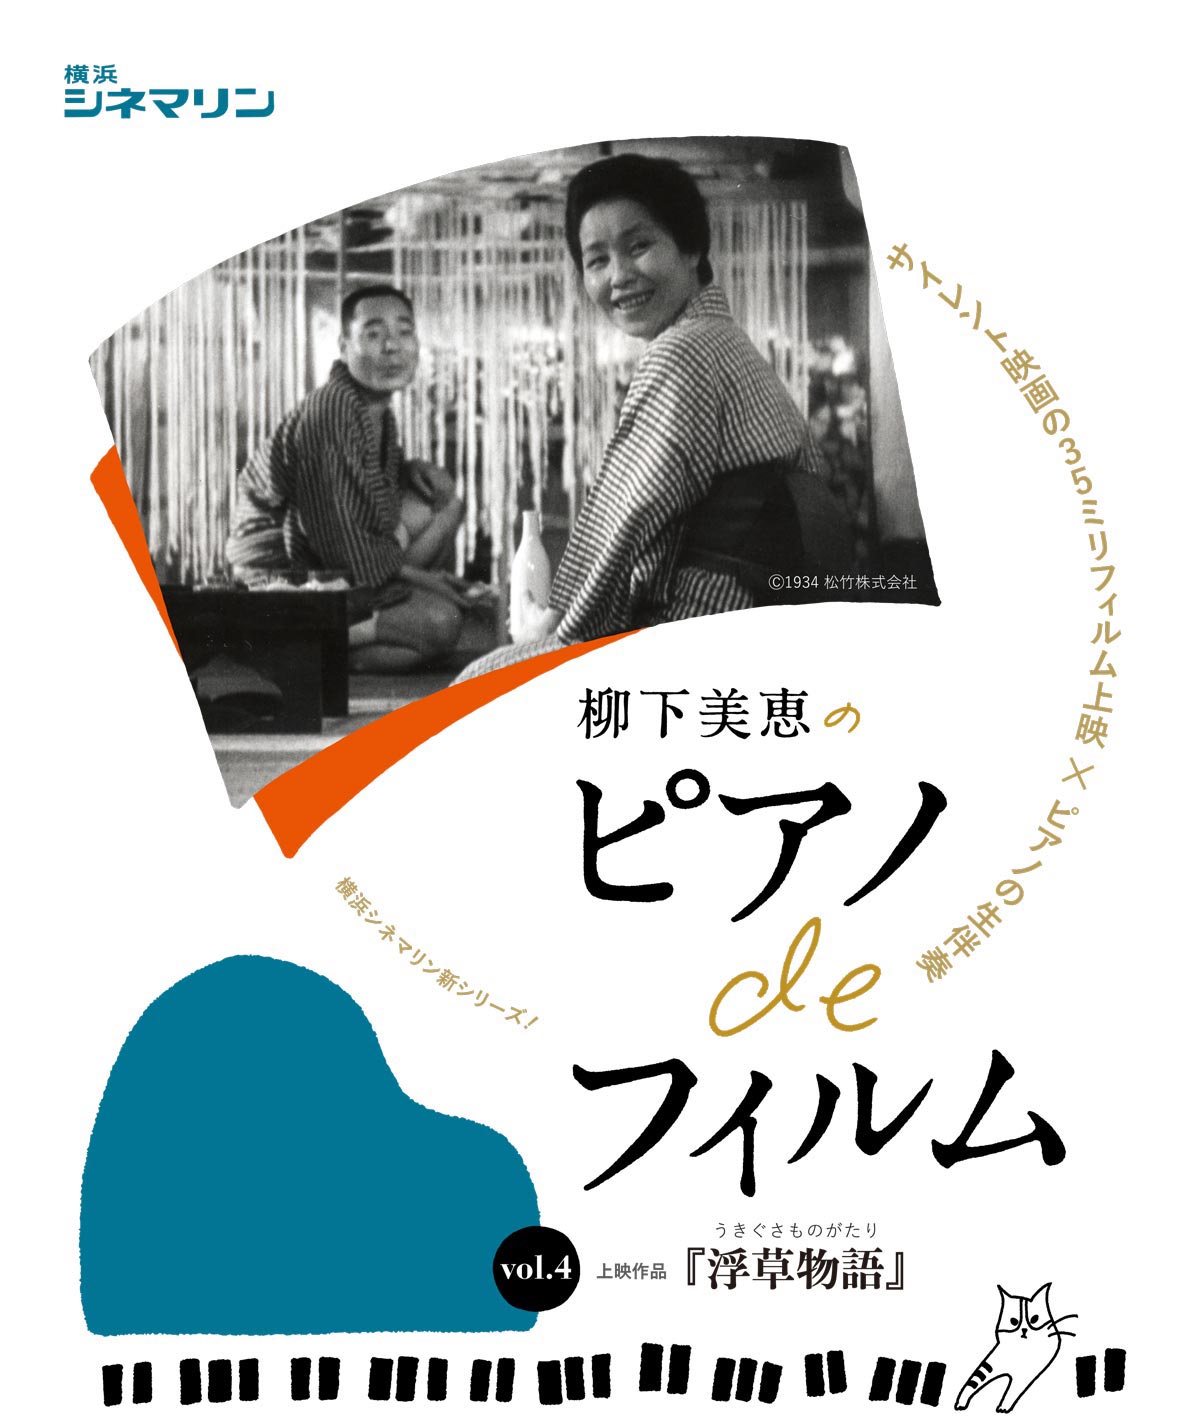 柳下美恵のピアノdeフィルム Vol 4 浮草物語 横浜シネマリン